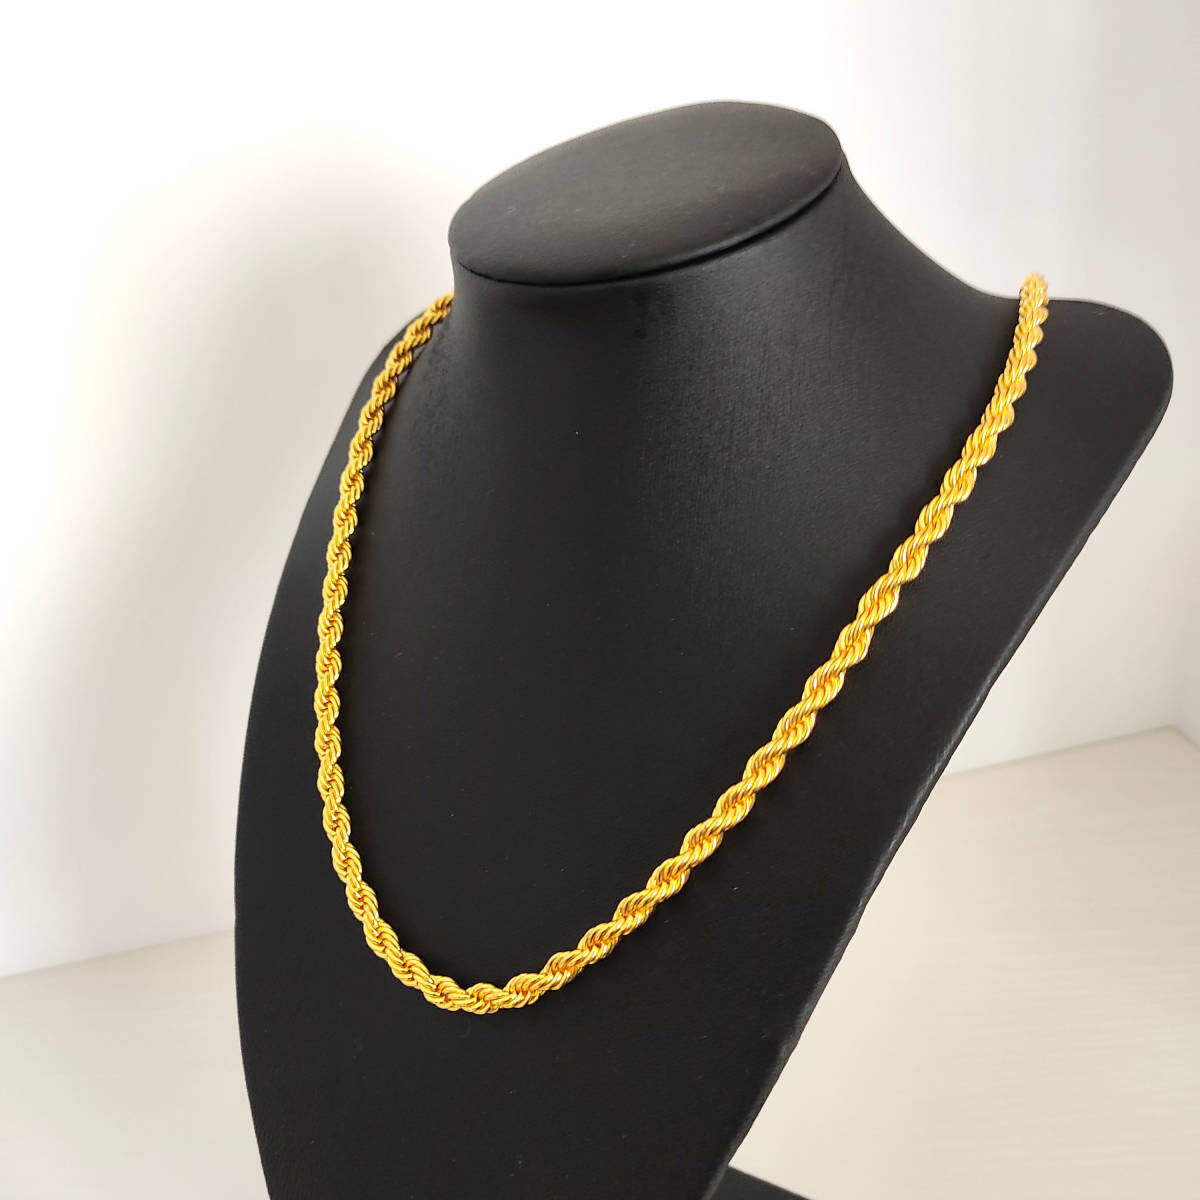 necklace メンズ レディース 金 ゴールド ロープチェーン ネックレス 18k Gold Plated k18 18k 鍍金 の画像1